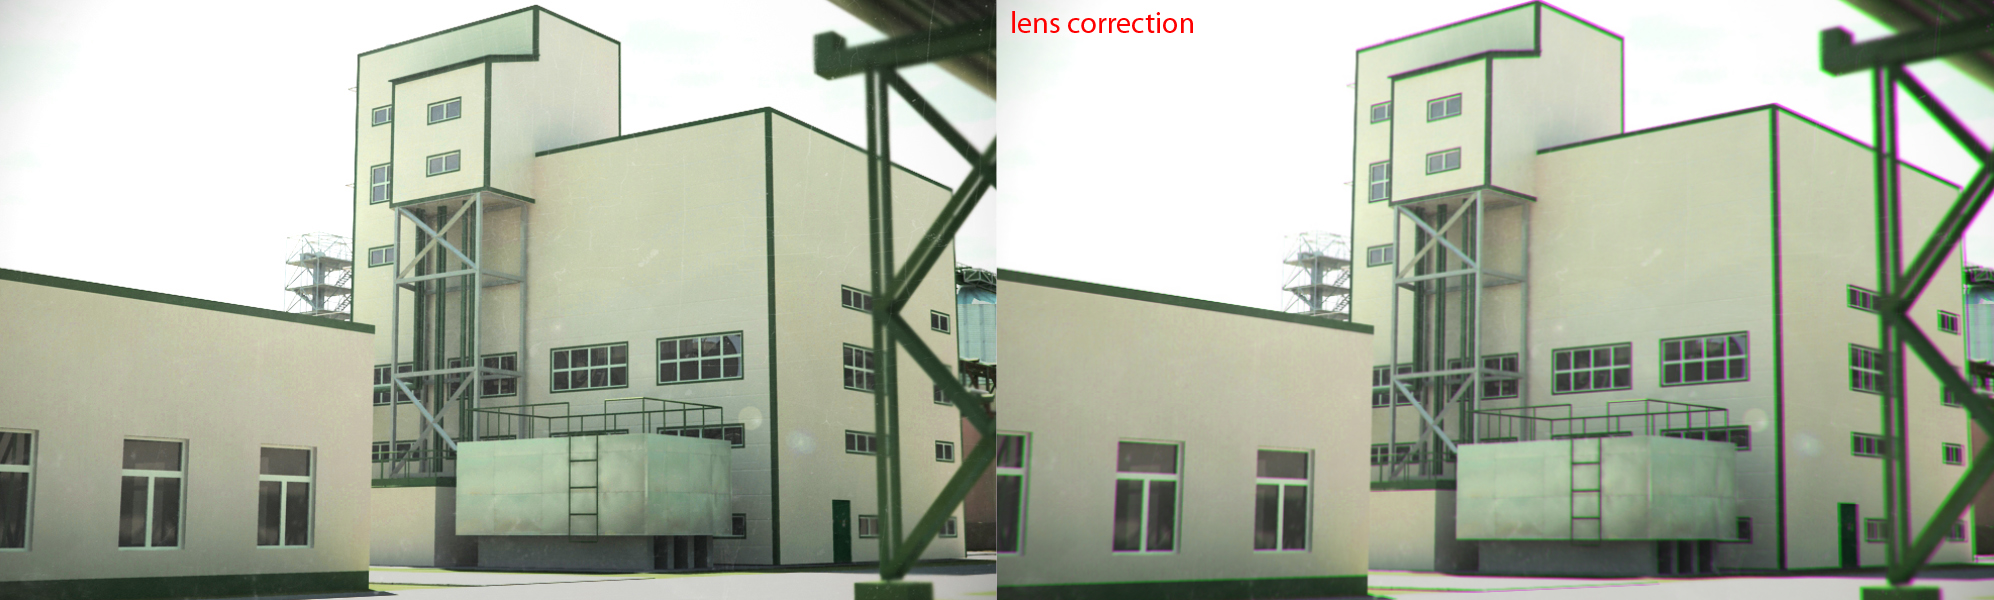 lens correction.jpg